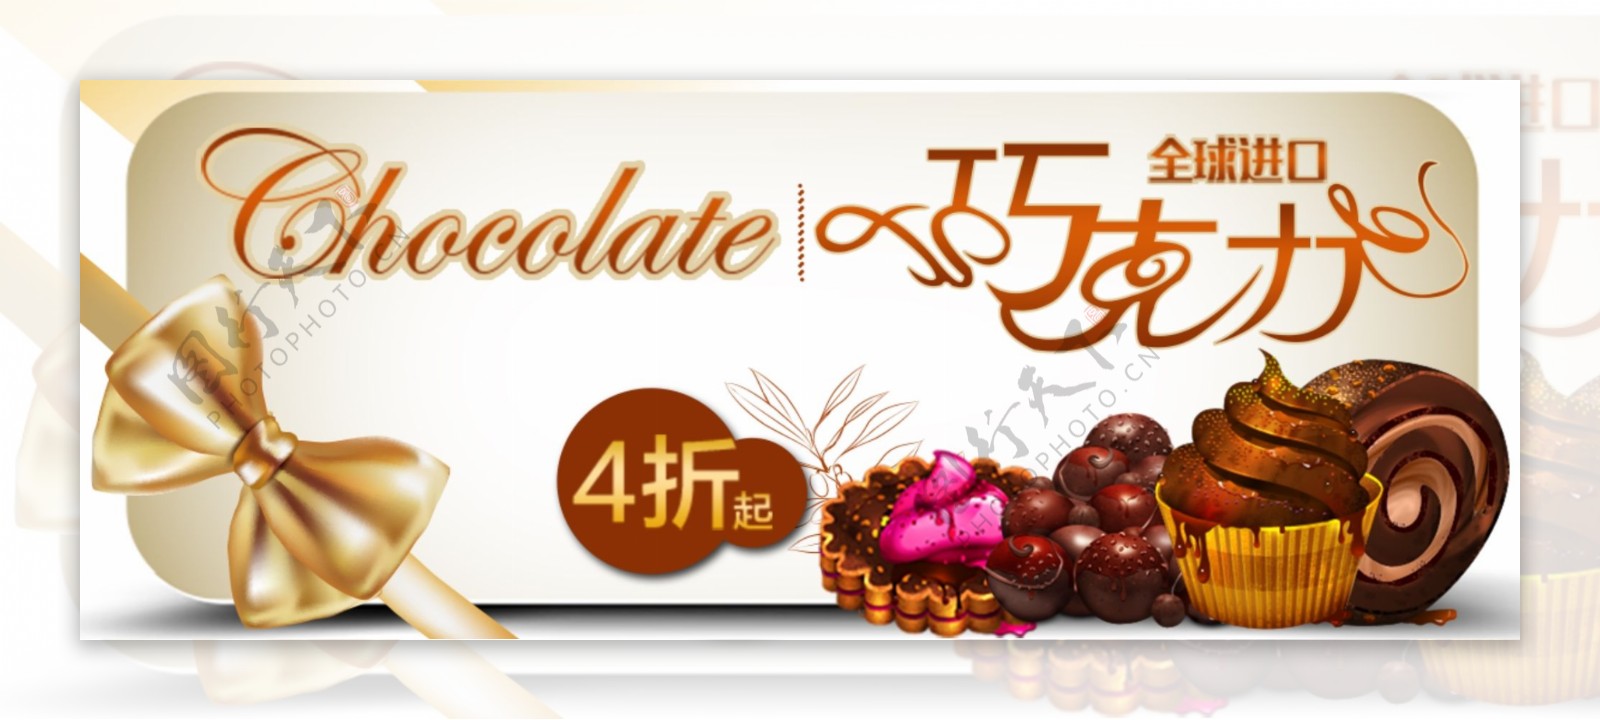 全球进口巧克力优惠标签设计